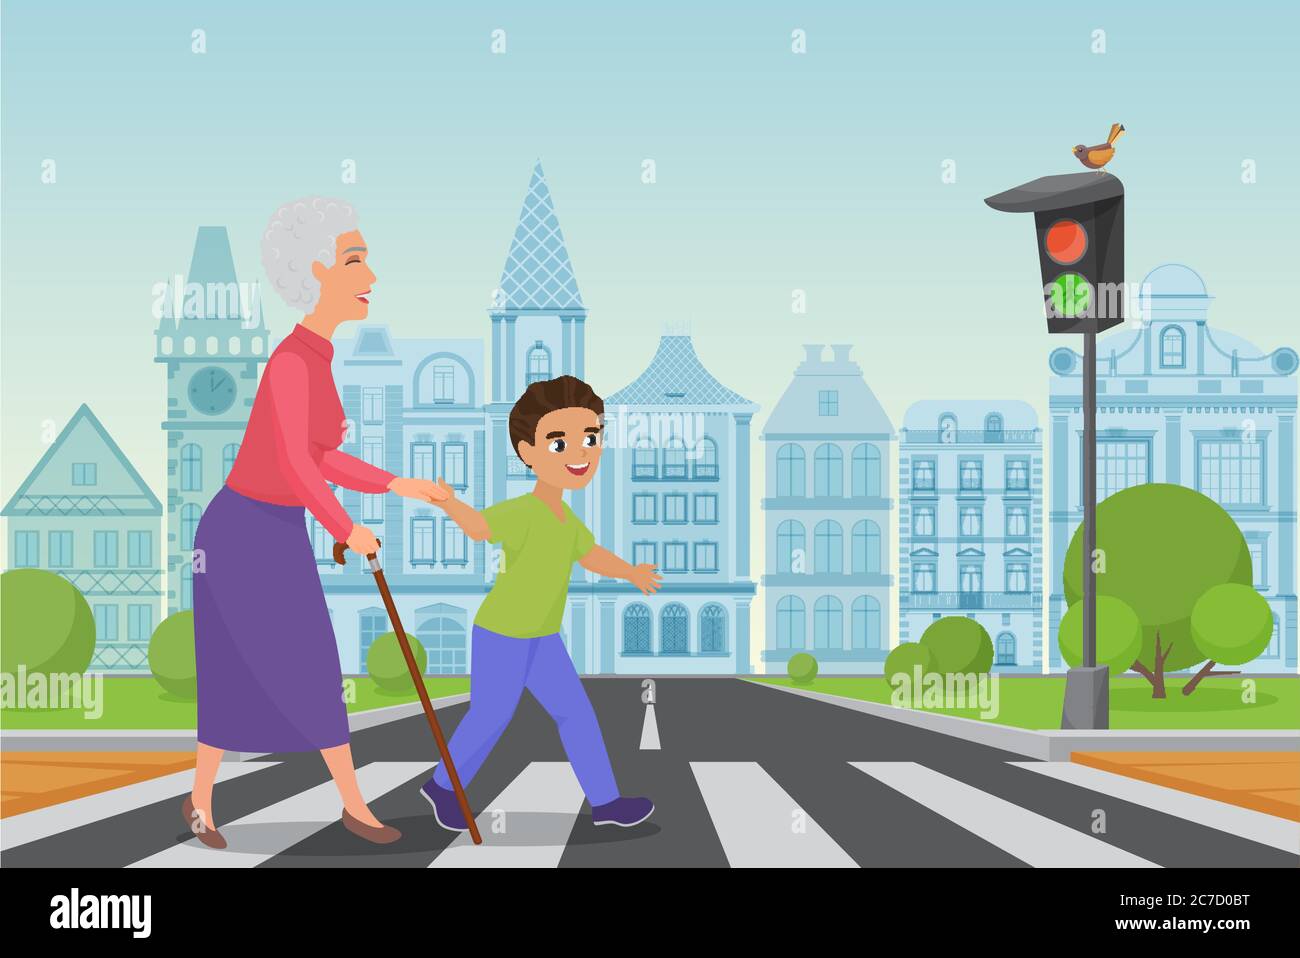 Un petit garçon poli aide une vieille femme souriante à passer la route à un passage pour piétons tandis que le feu vert brille. Illustration vectorielle de dessin animé Illustration de Vecteur